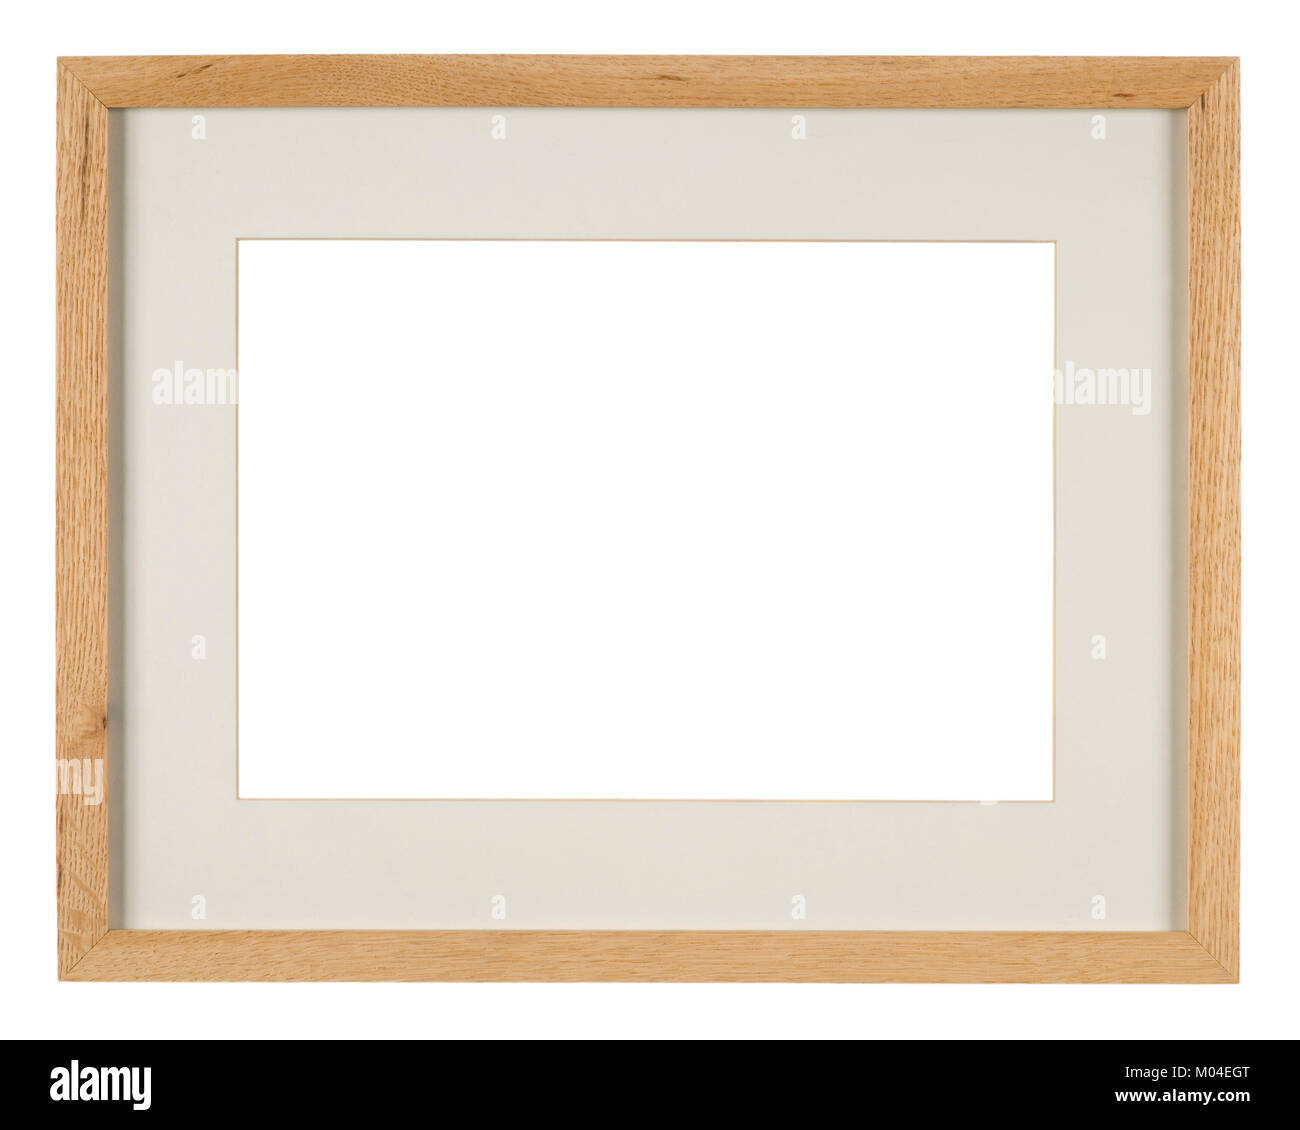 Immagine vuota, telaio in legno di quercia chiaro con montatura Foto Stock